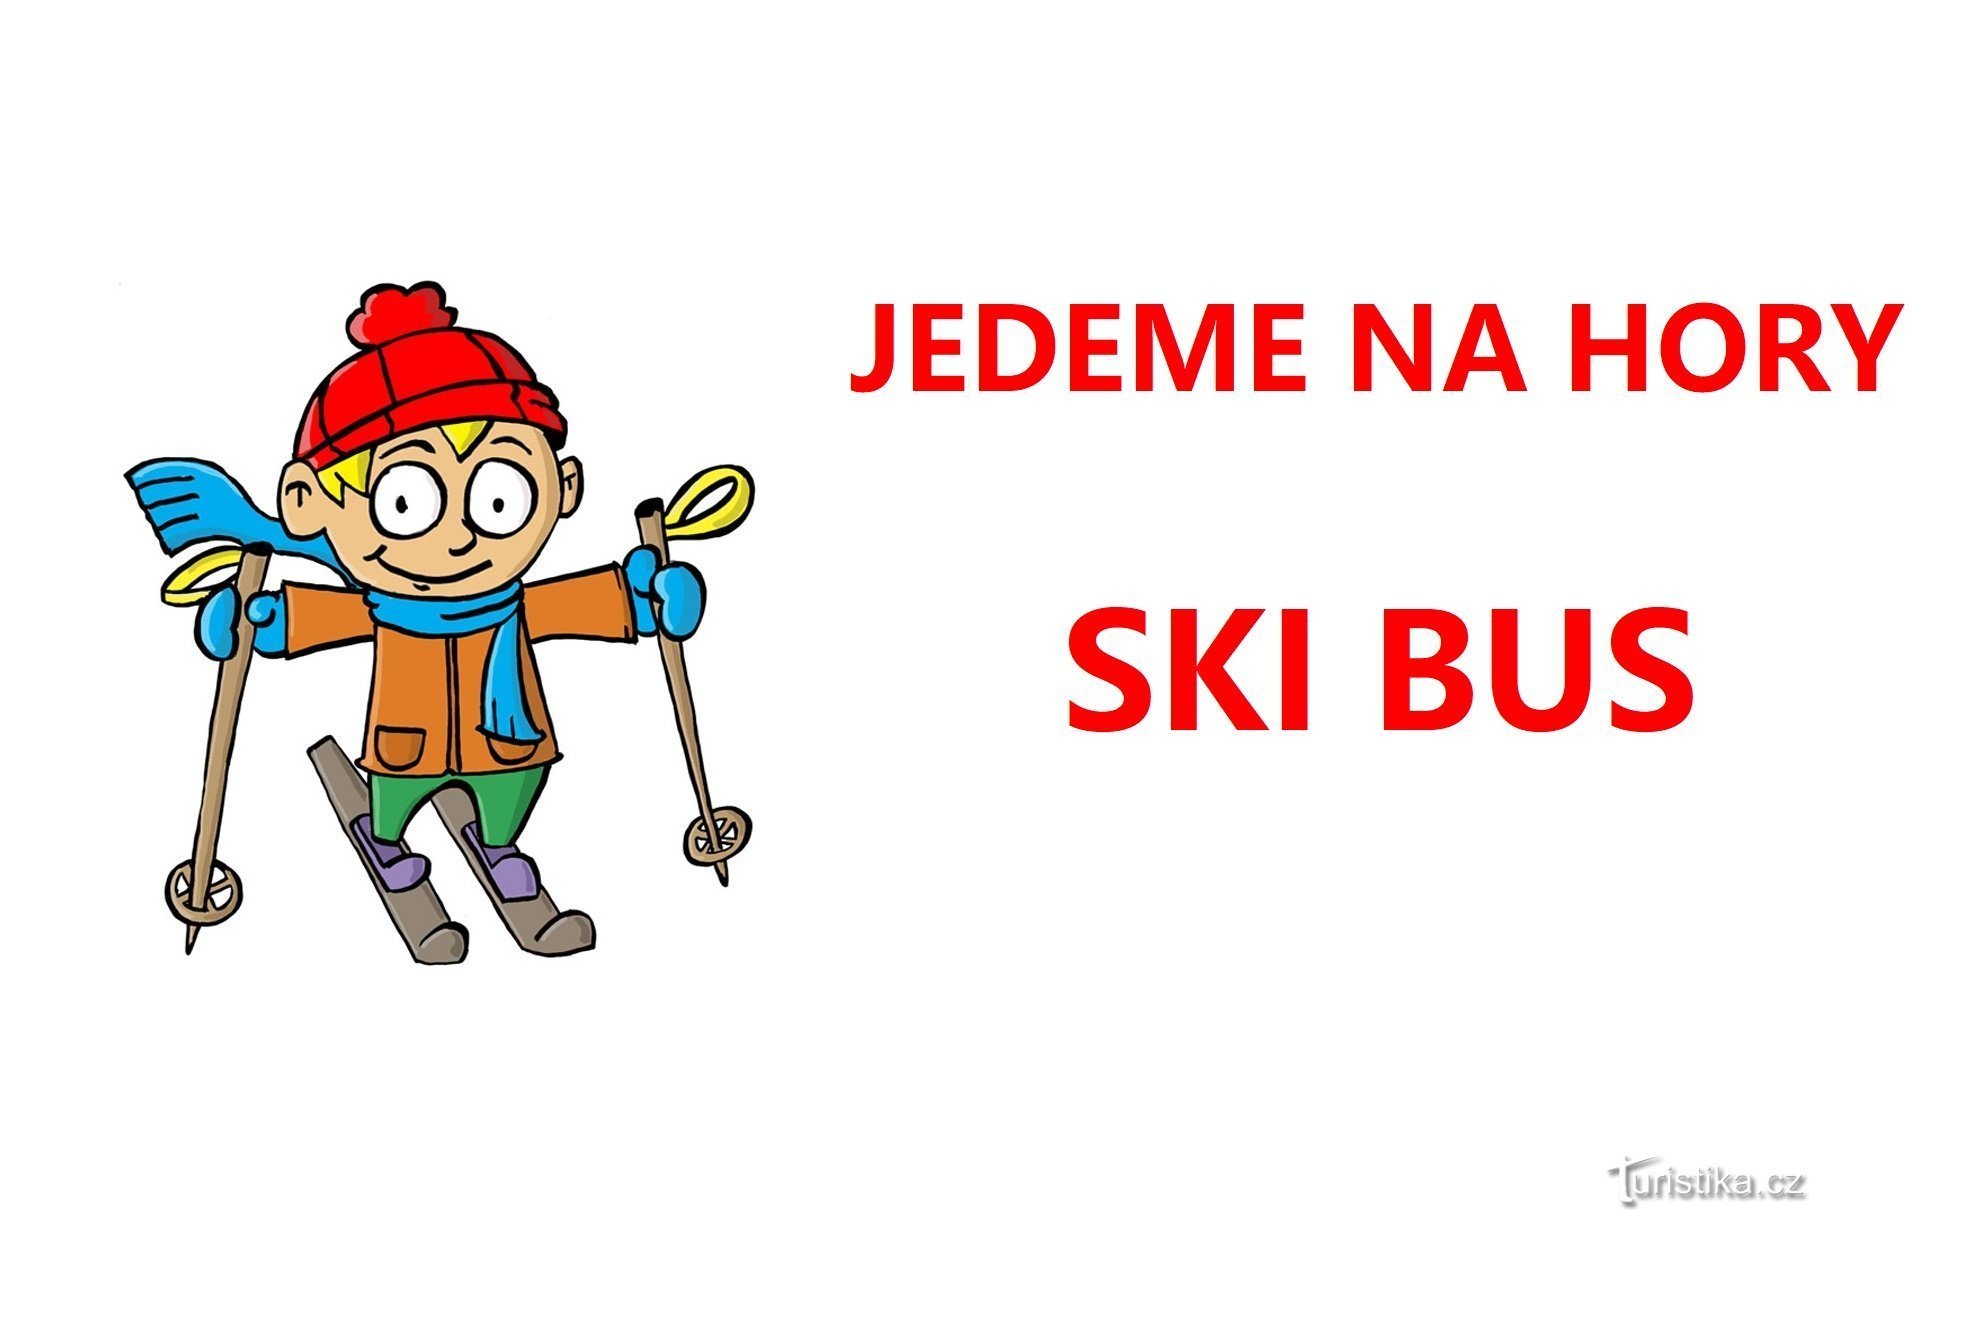 SKIBUS, Teren narciarski Malá Úpa SkiMU - praktyczne informacje i rozkłady jazdy